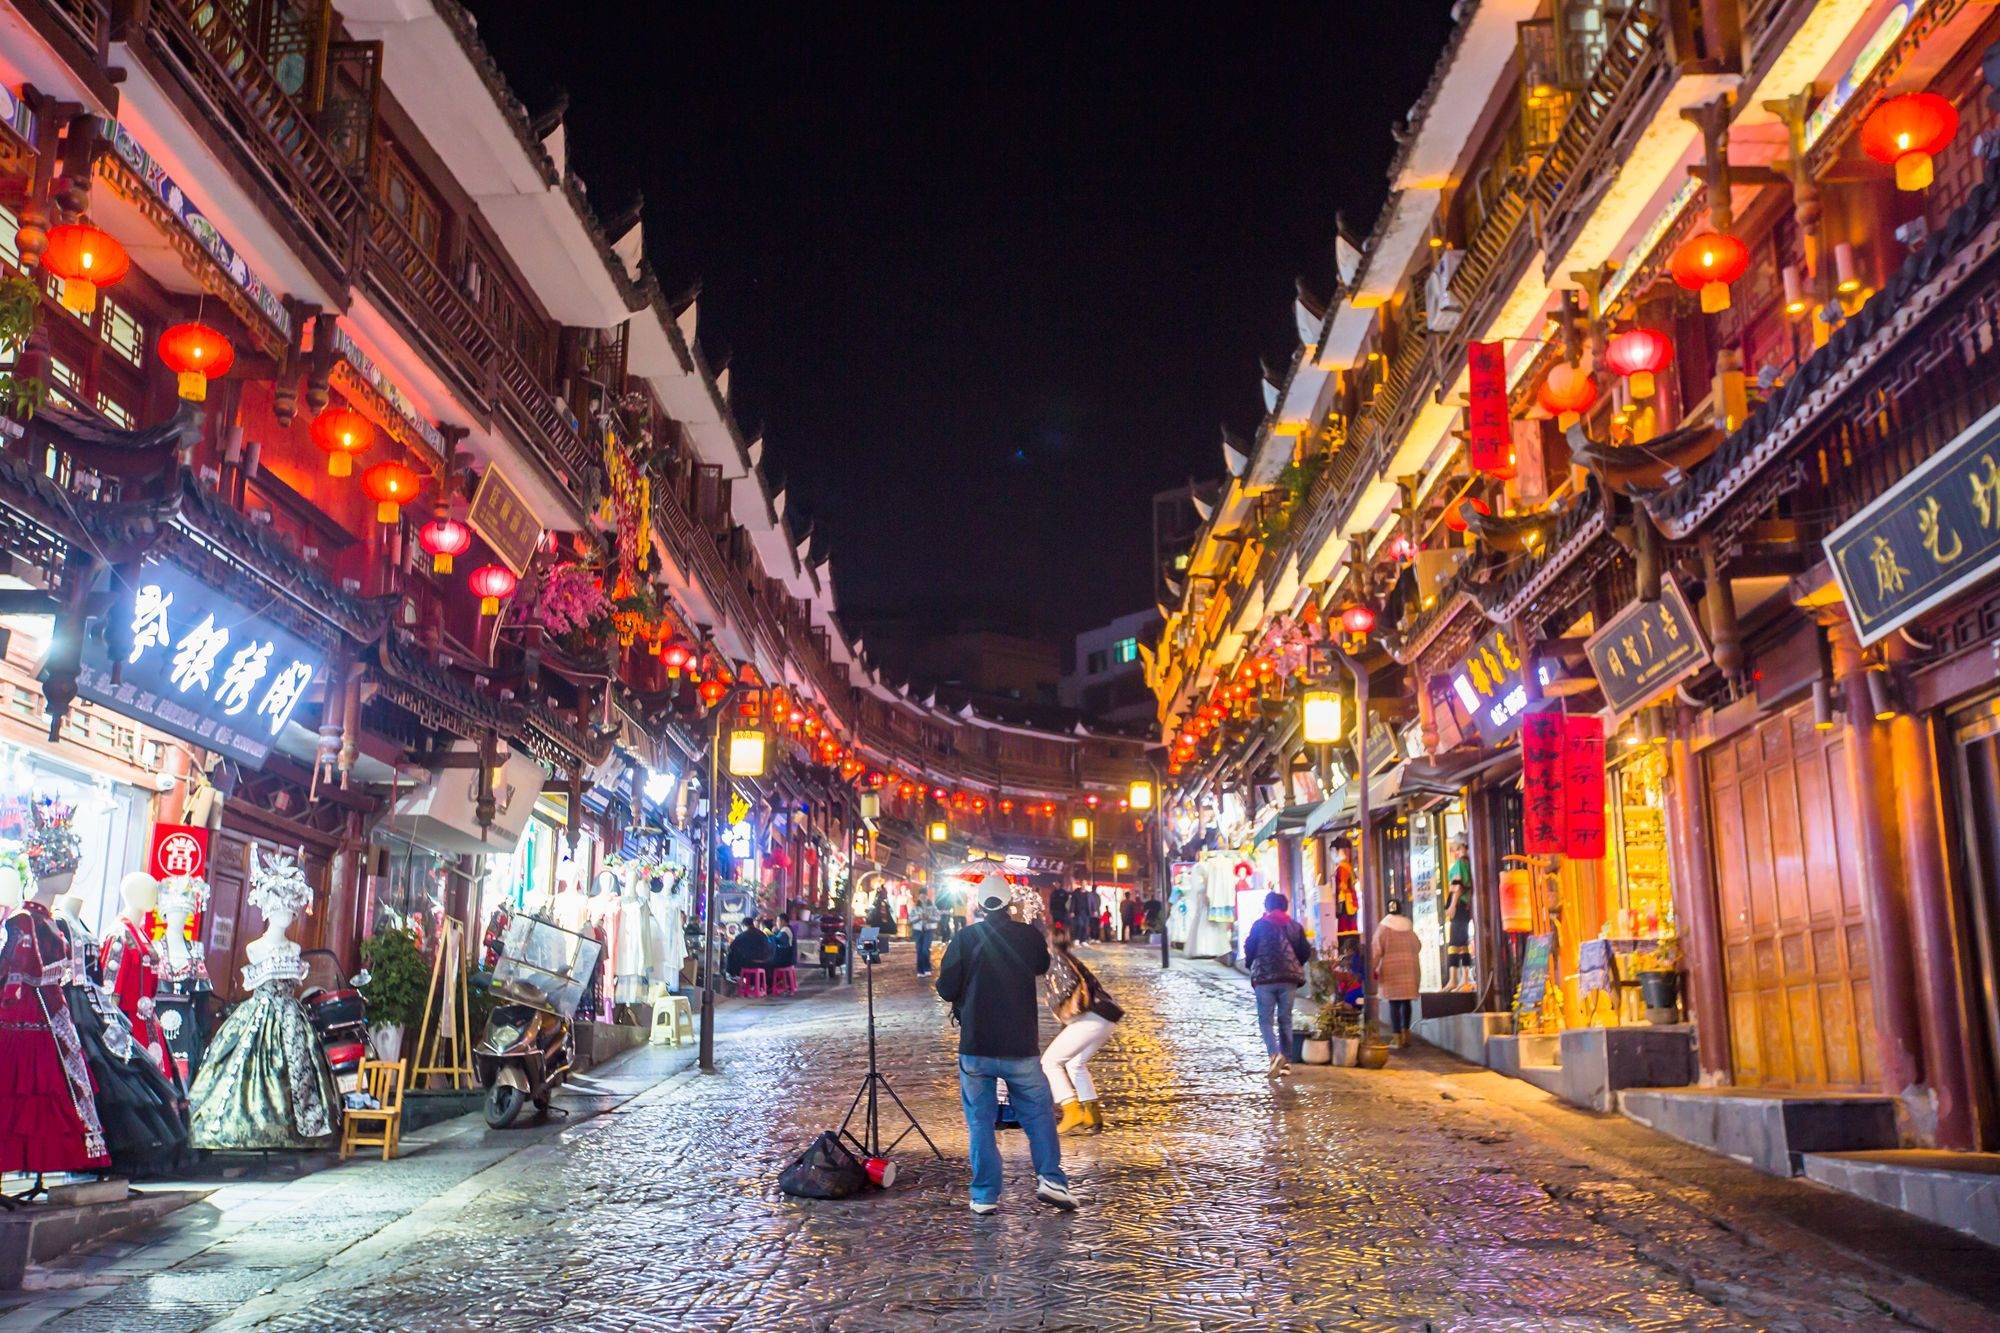 贵州都匀有一条石板街,历史悠久,古色古香,充满了少数民族风情